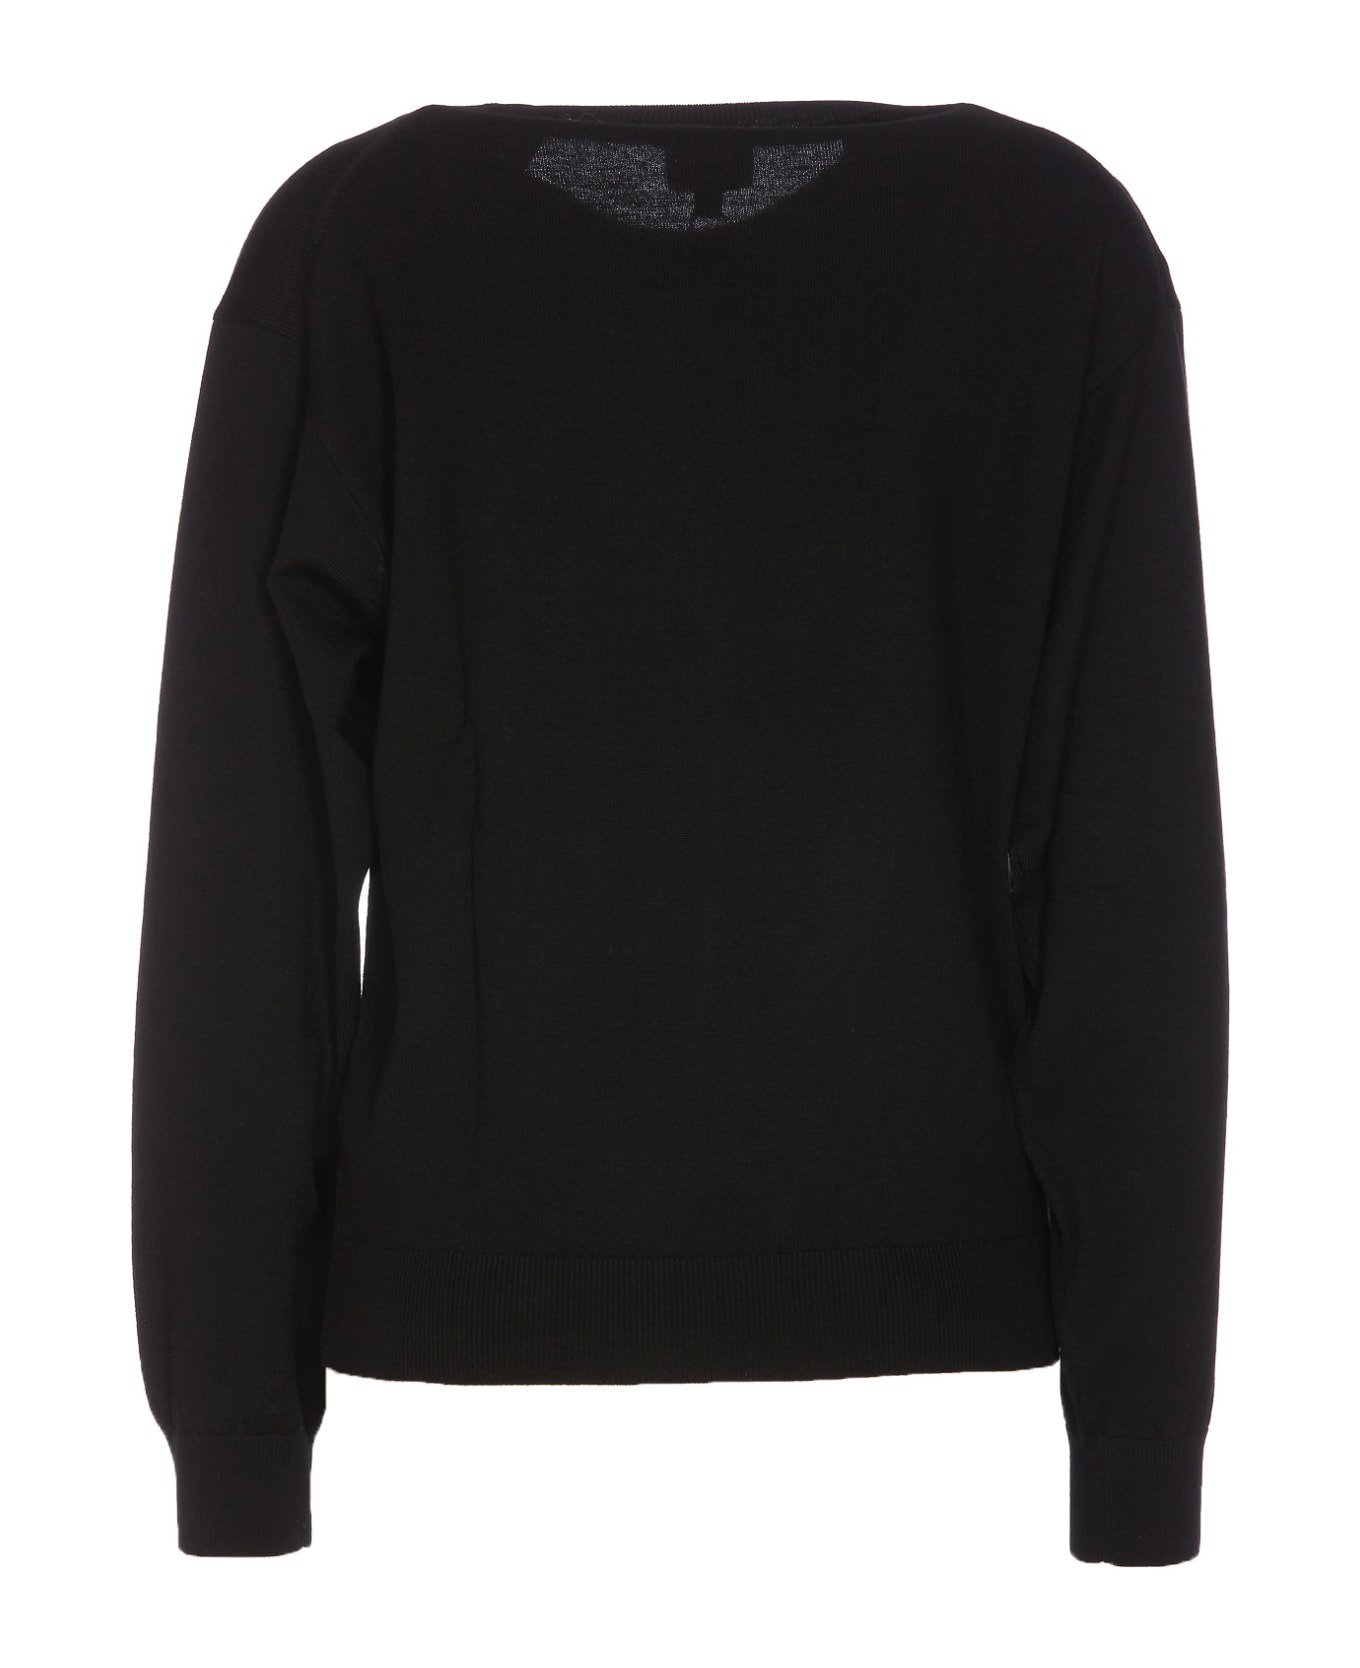 Kenzo Boke Crest Sweater - Black